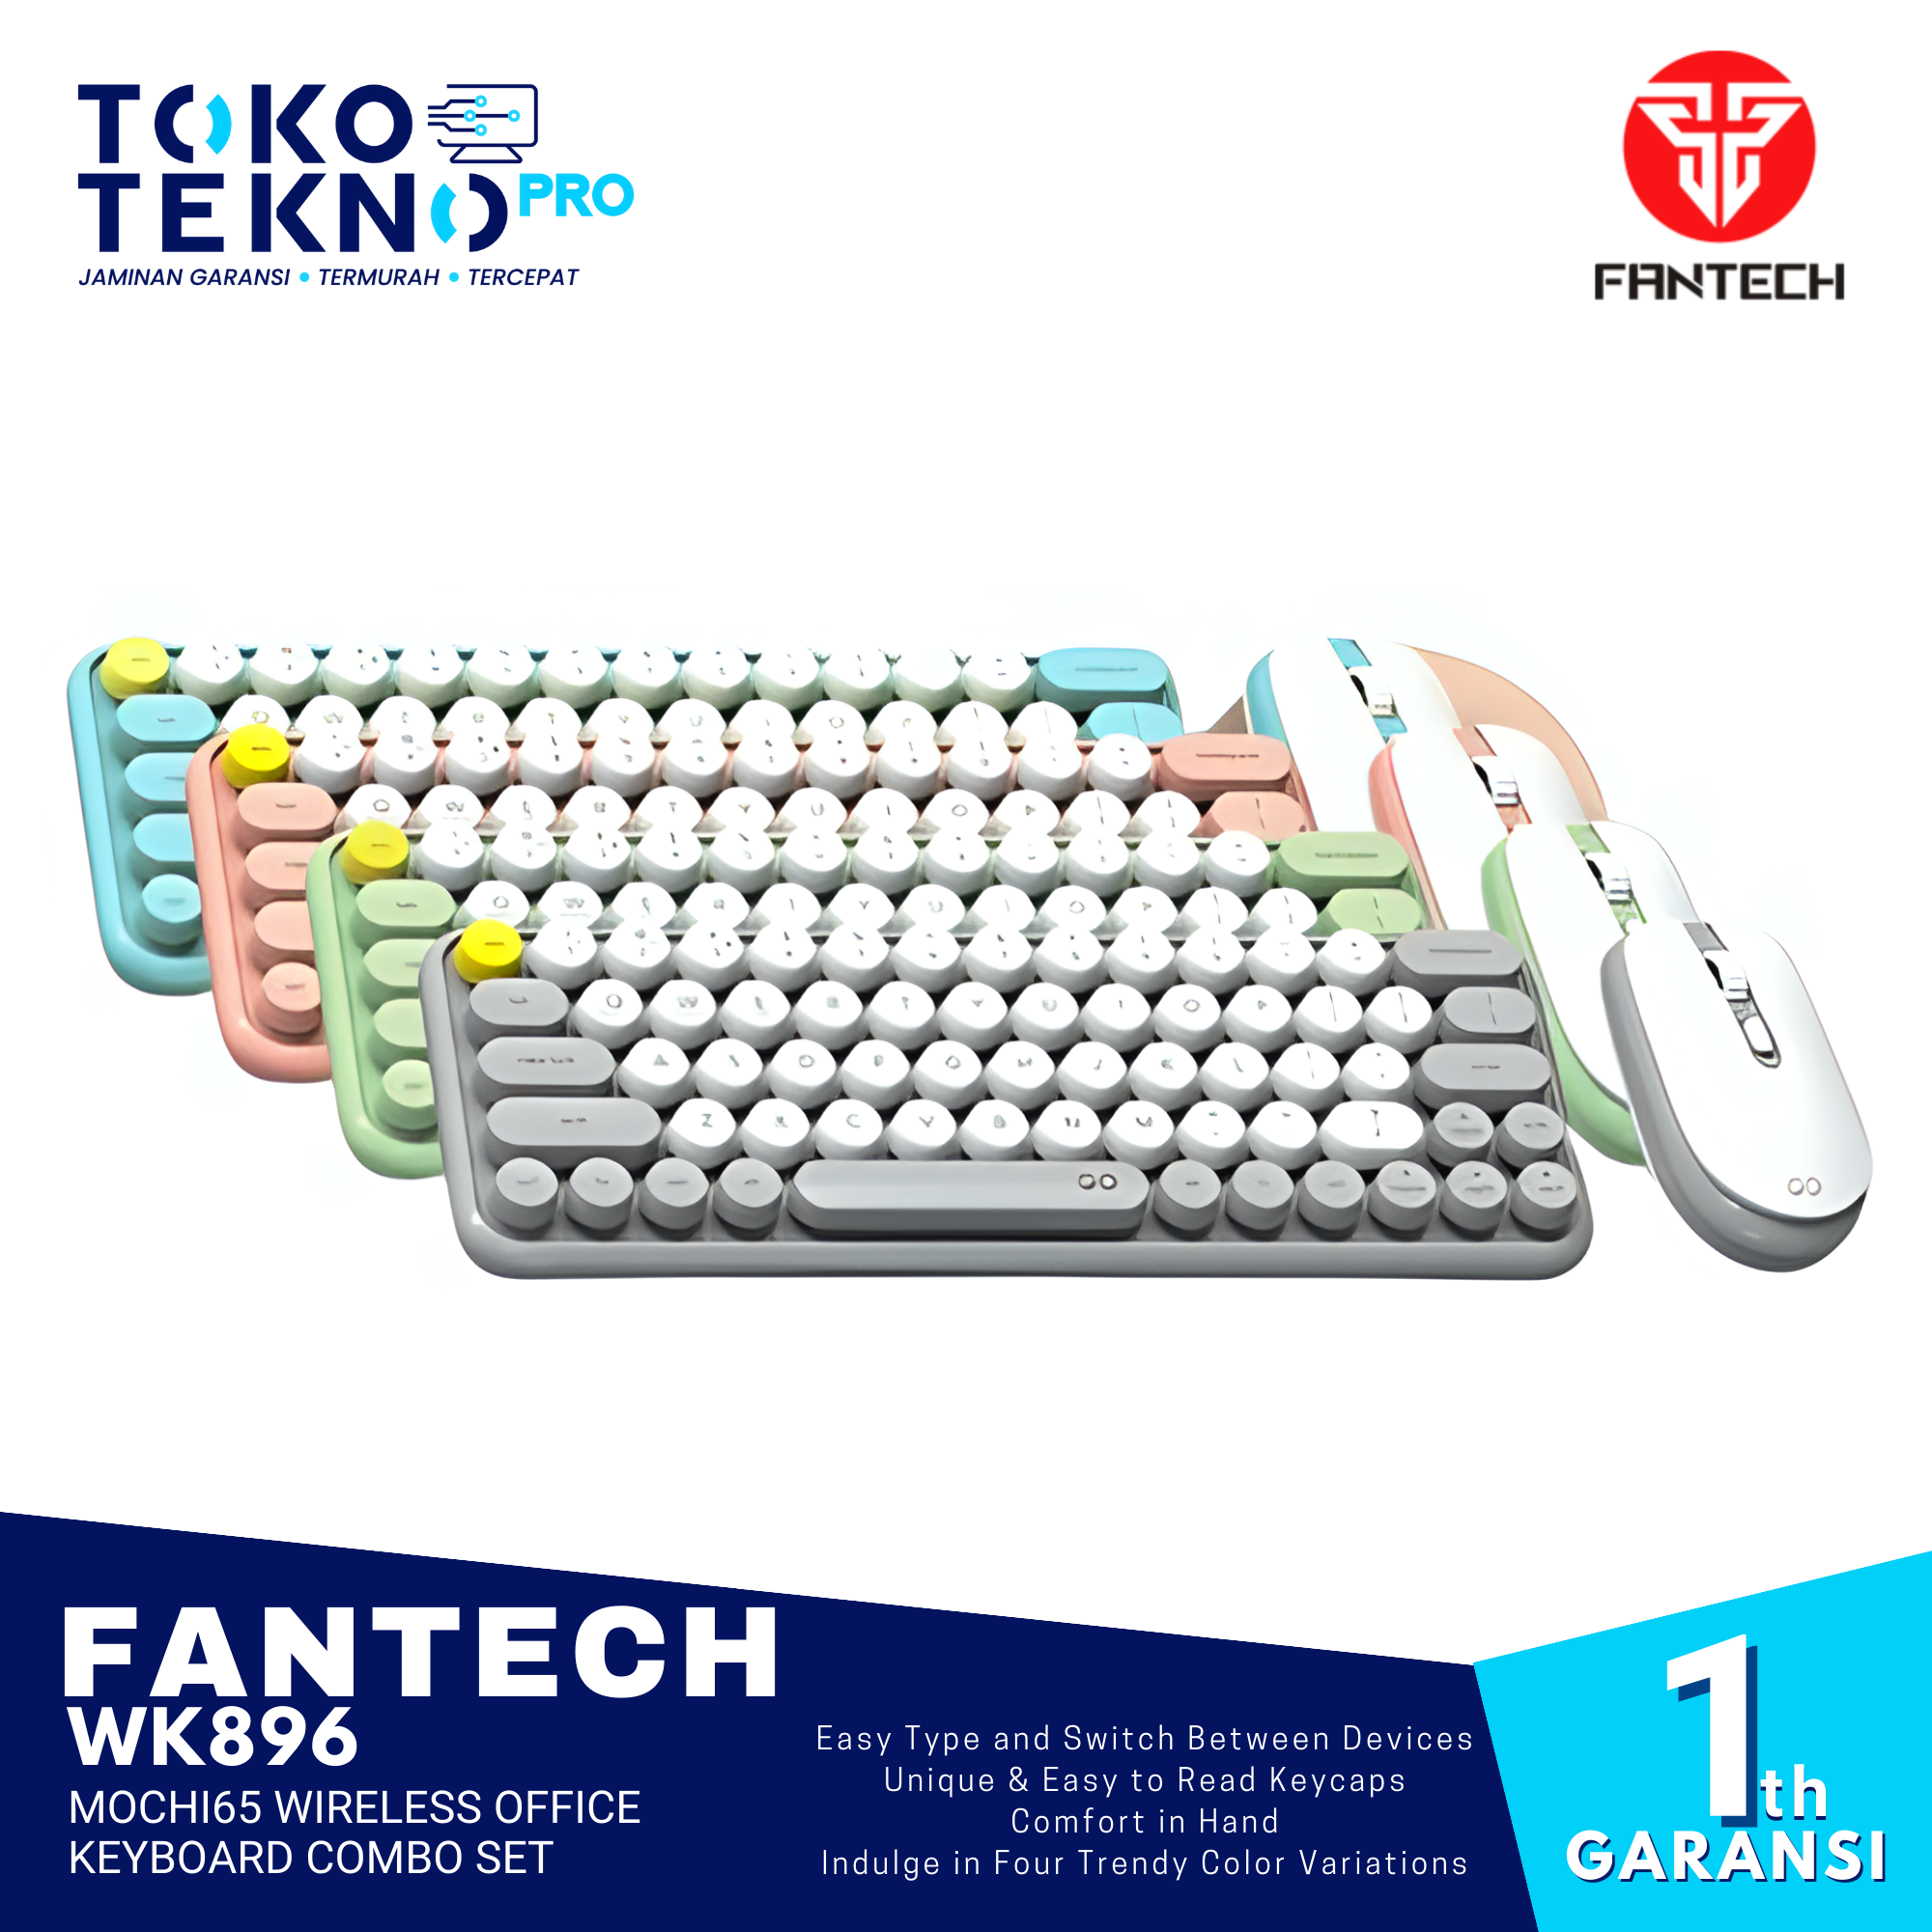 Fantech WK896 Mochi65 Wireless Office Keyboard Combo Set